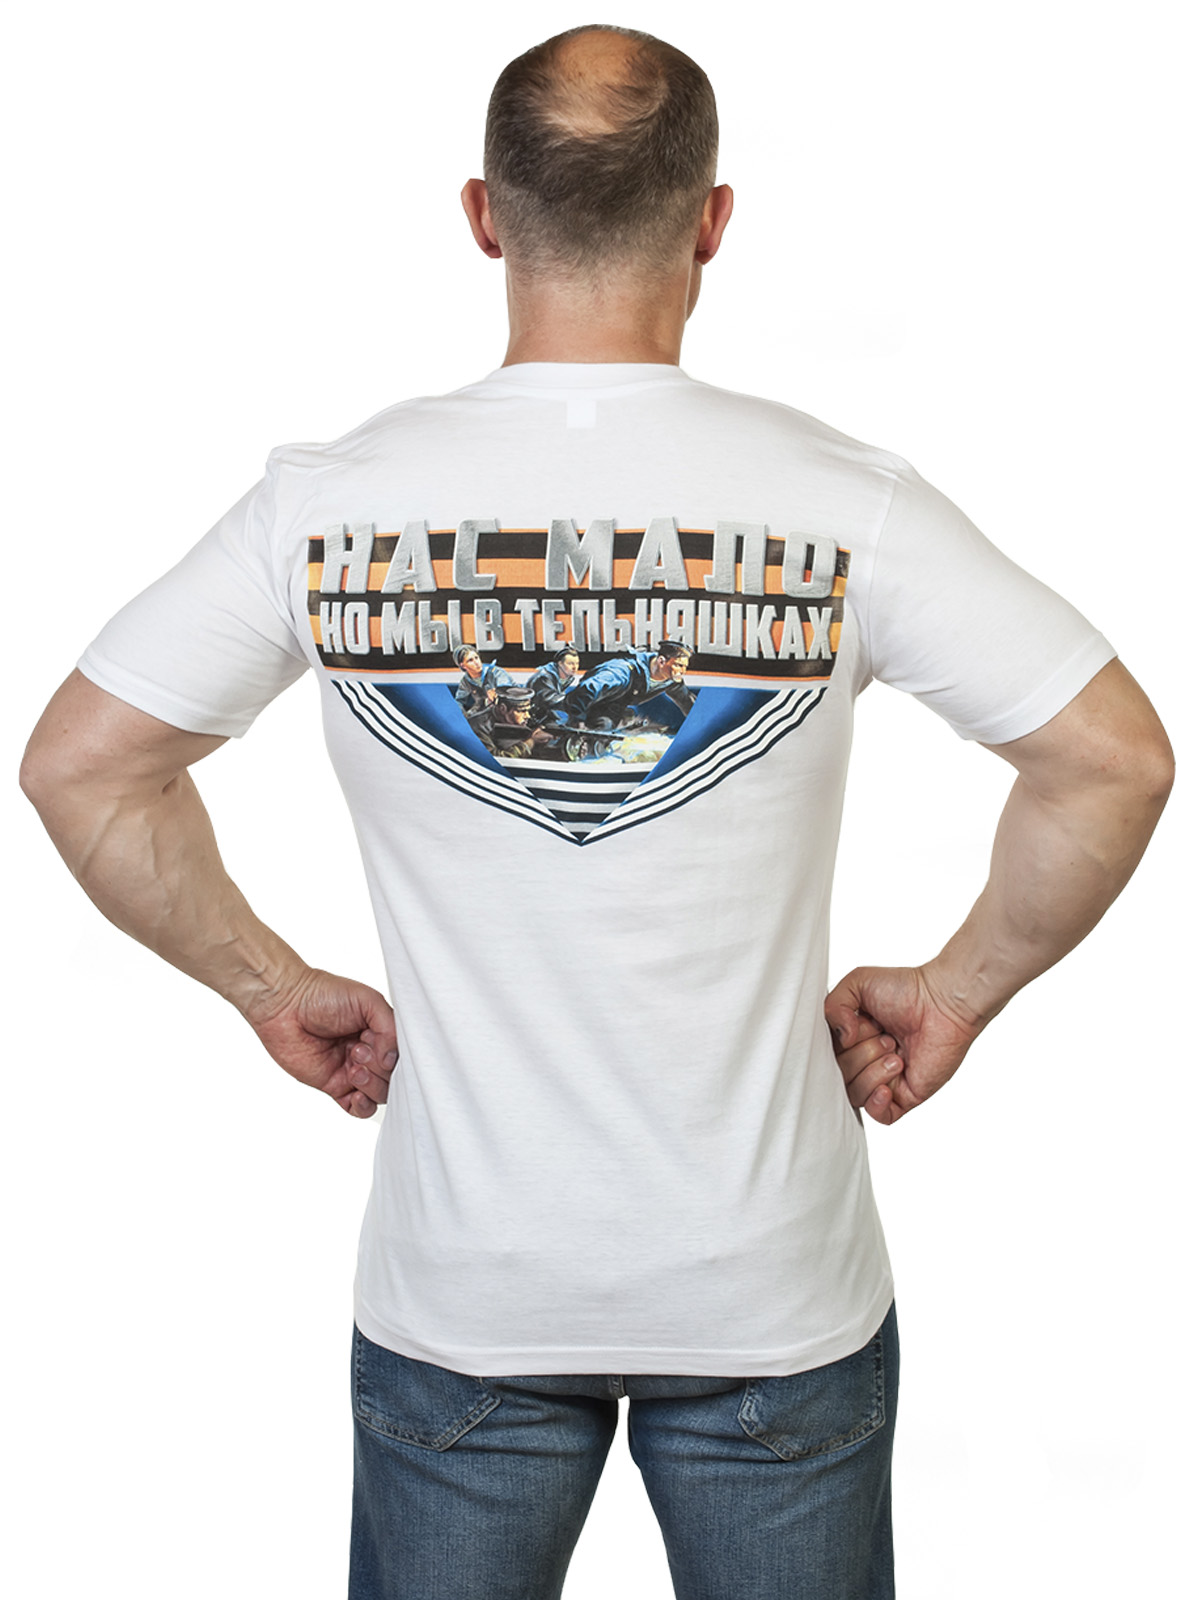 Купить футболку Российский Черноморский флот в интернет-магазине